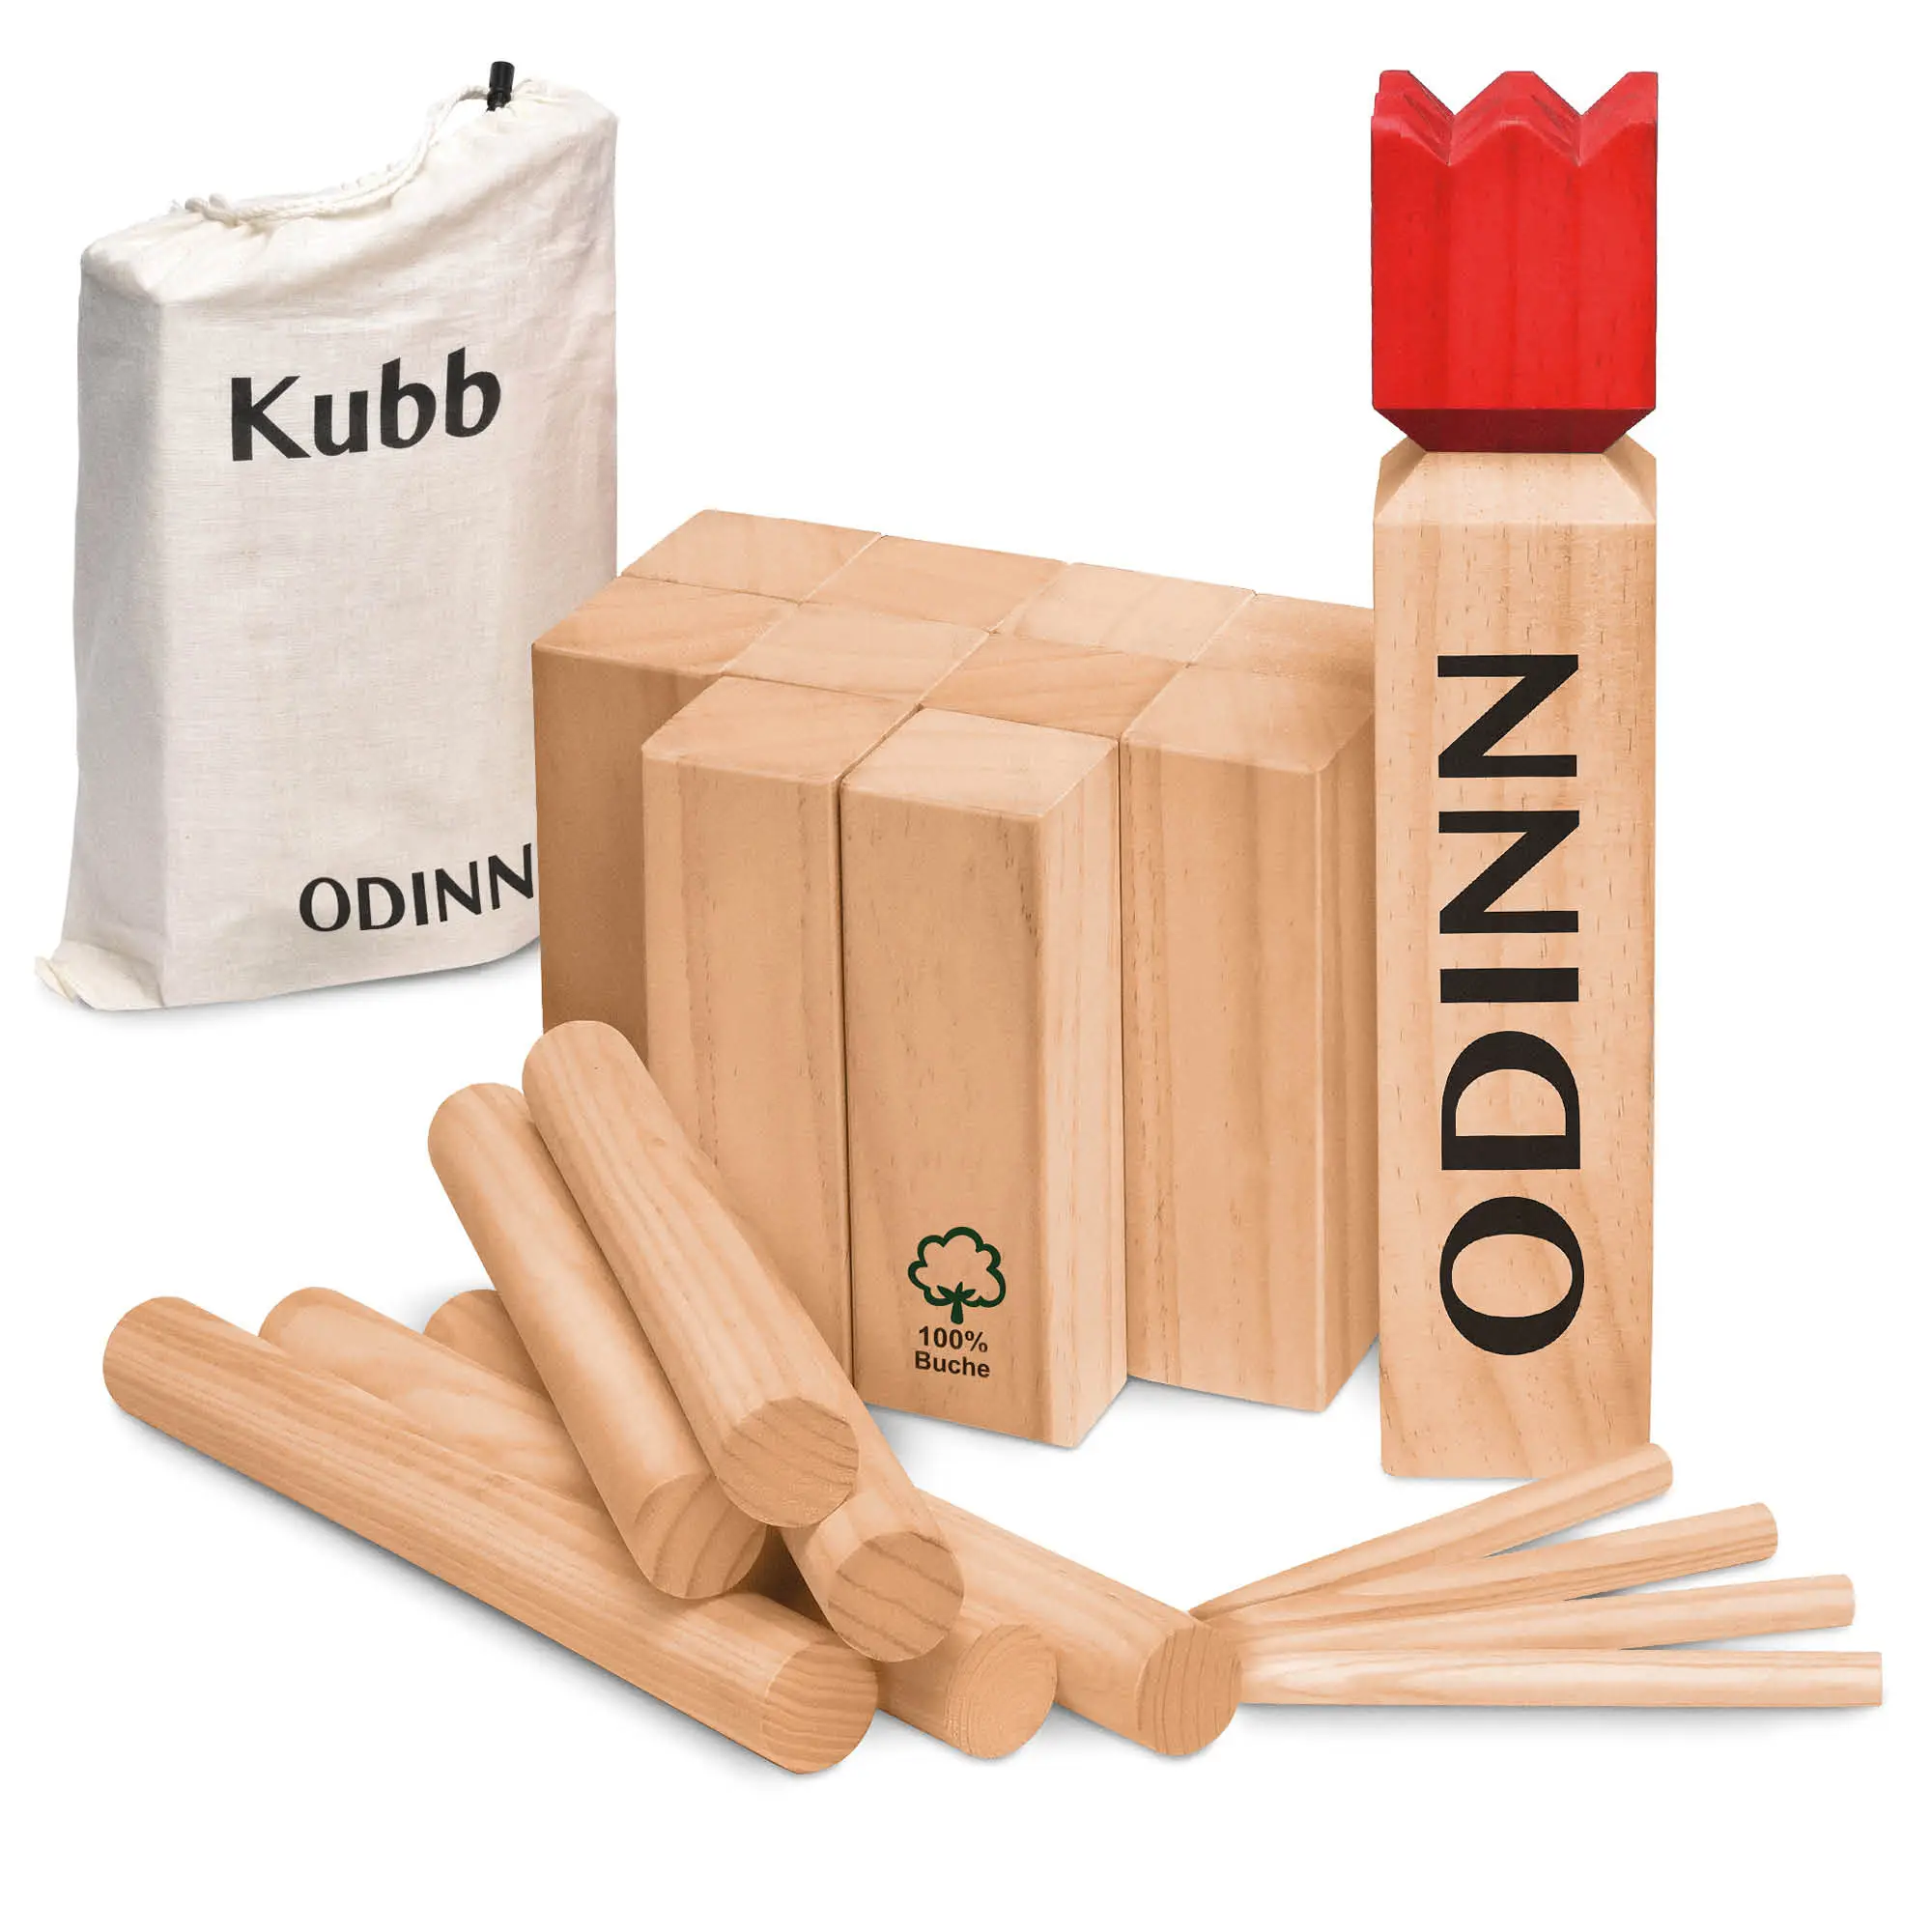 Odinn Kubb Schwedenschach | Outdoor-Spielzeuge